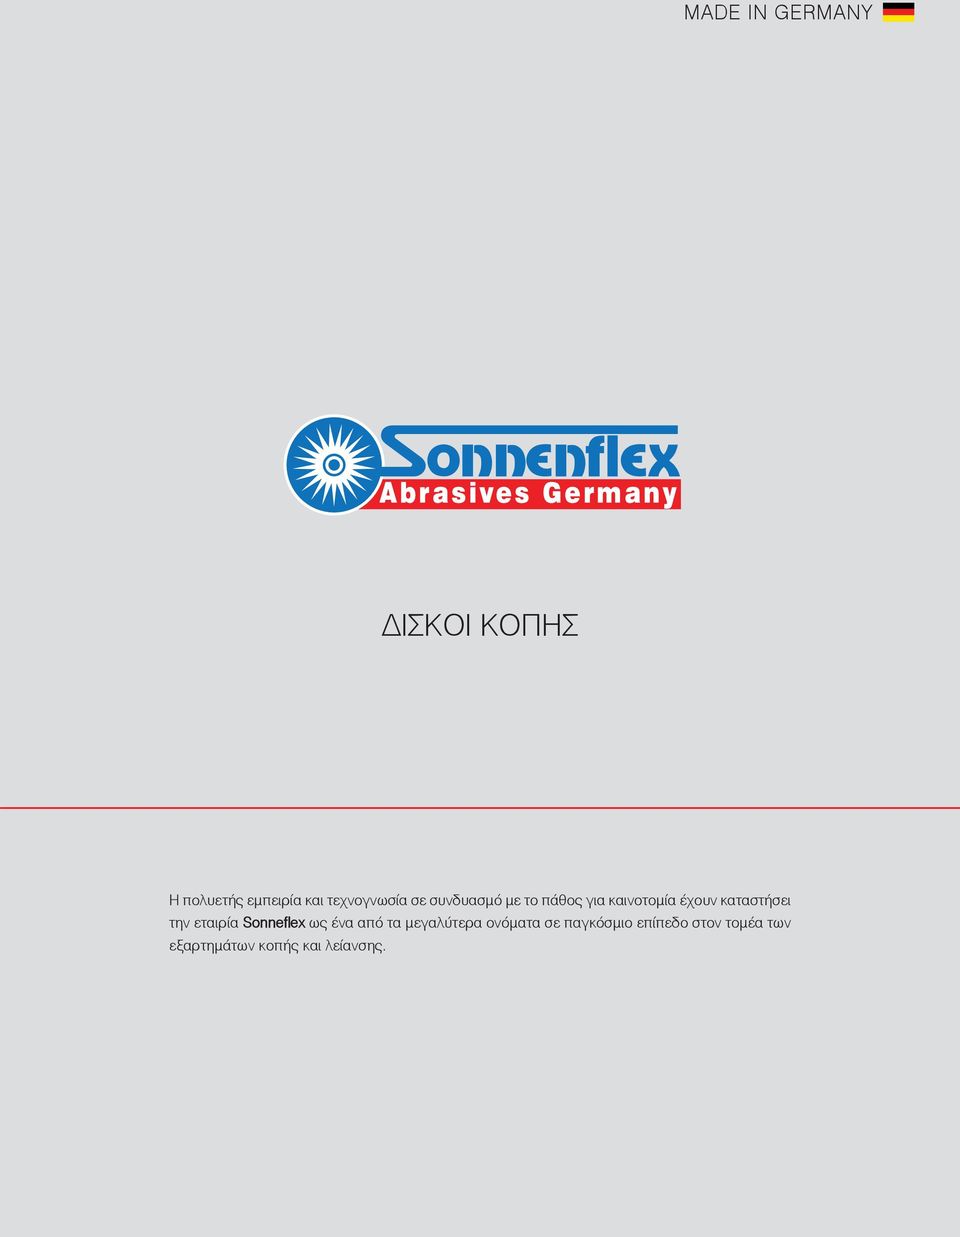 καταστήσει την εταιρία Sonneflex ως ένα από τα μεγαλύτερα